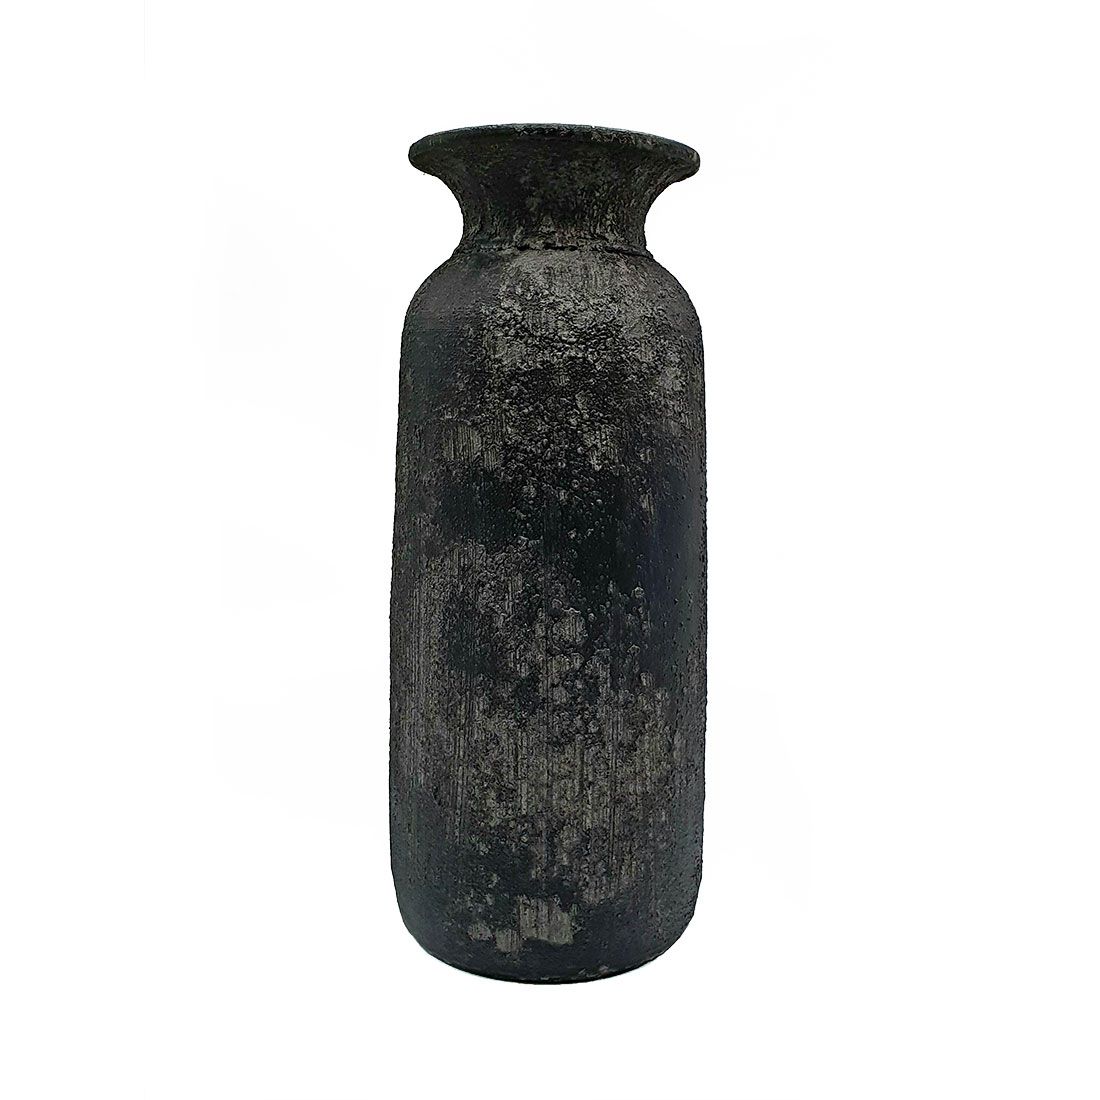 Juoda keramikinė vaza, 40cm